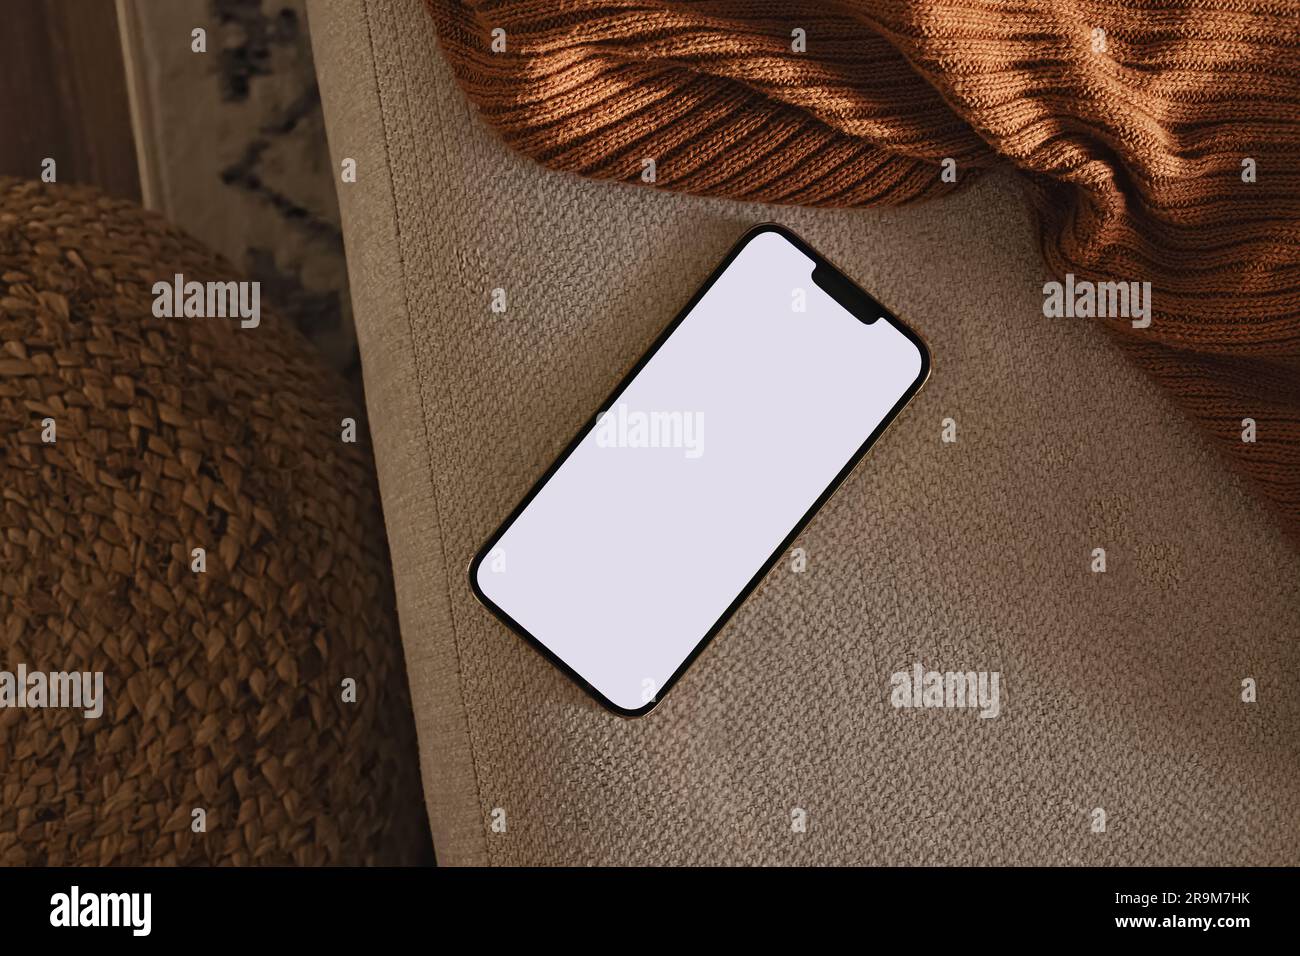 Téléphone avec écran vierge posé sur le canapé et tissu écossais brun. Design moderne et minimaliste, modèle de smartphone Banque D'Images